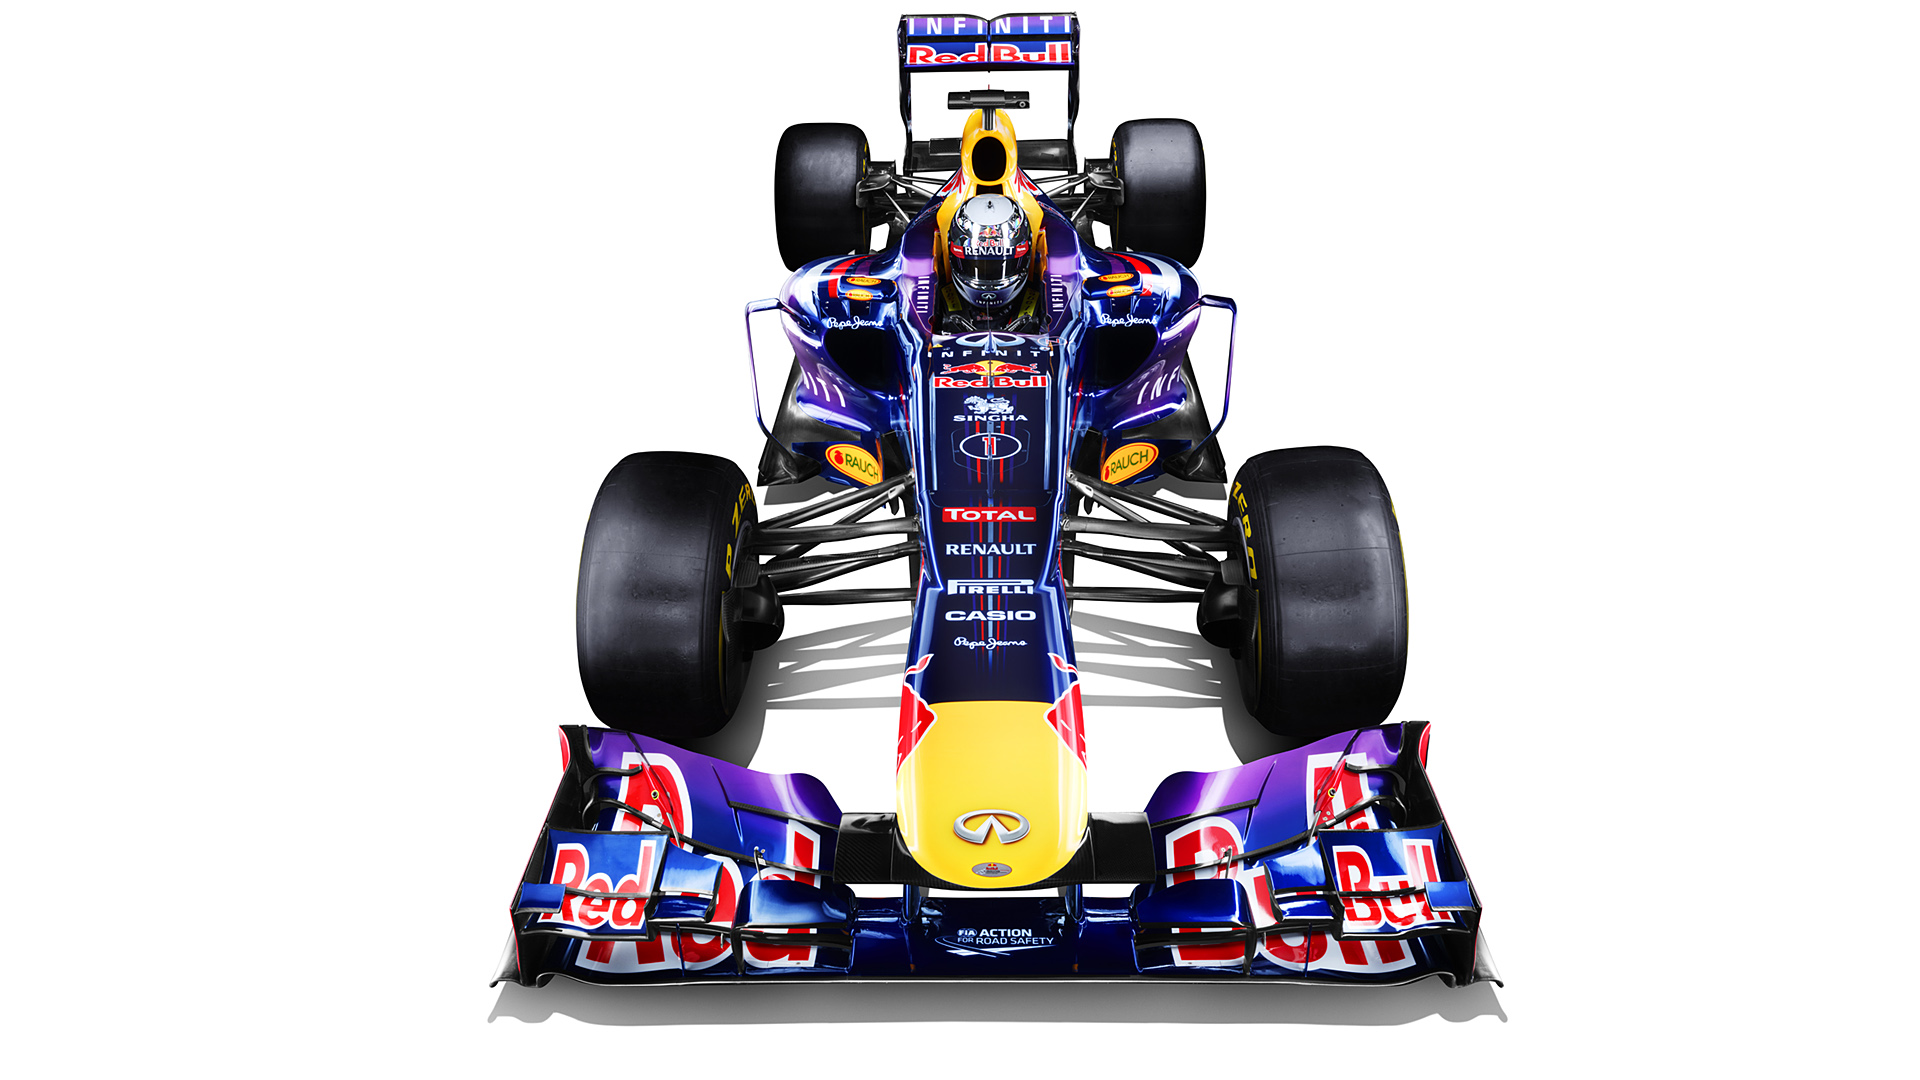  2013 Red Bull Racing RB9 Wallpaper.